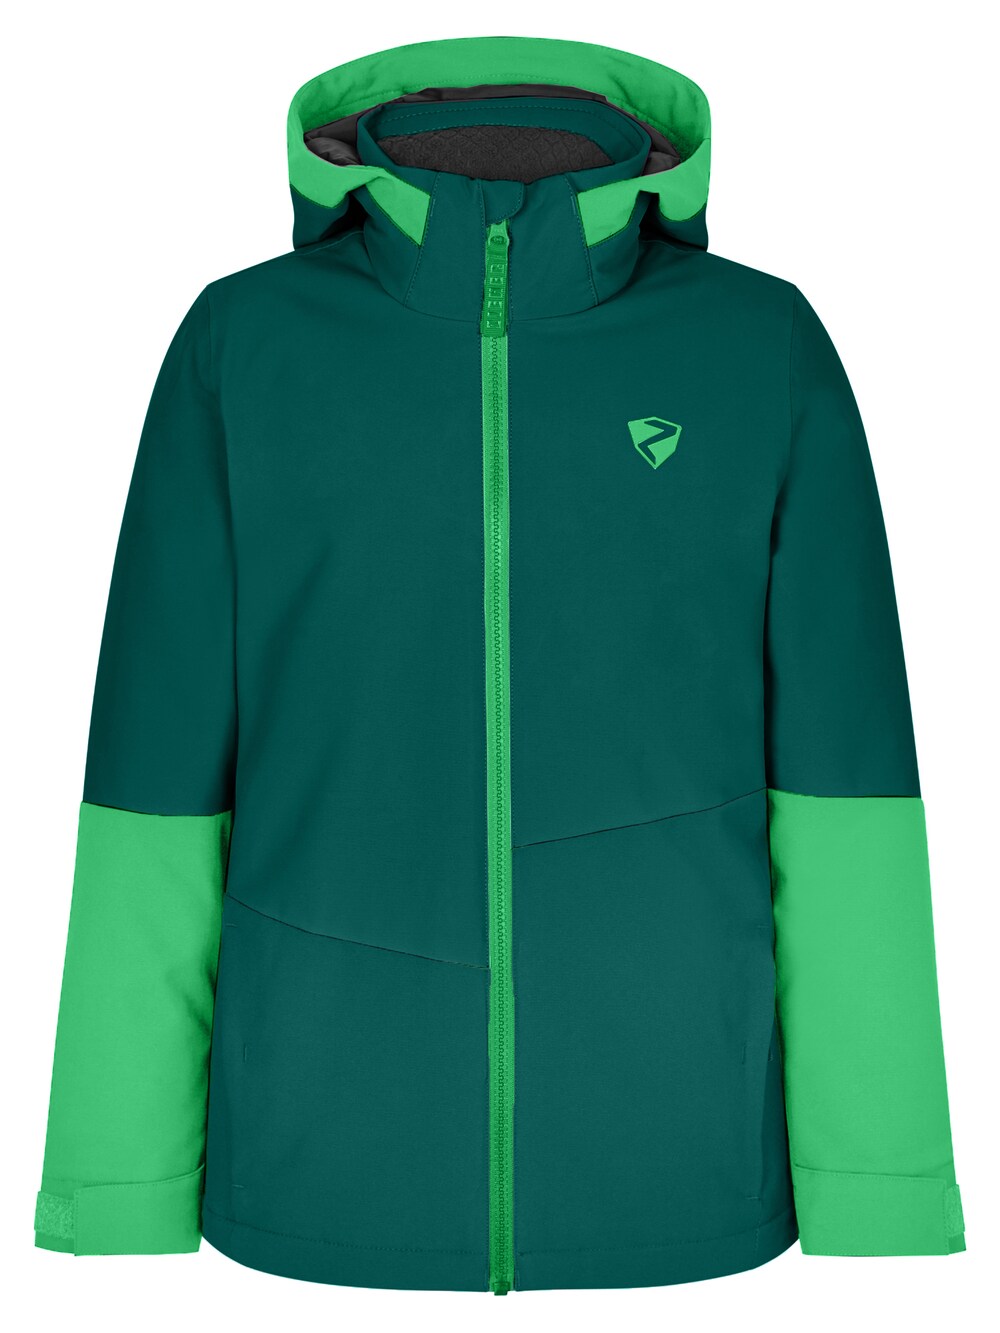 Спортивная куртка Ziener Avak, зеленый/светло-зеленый спортивная куртка ziener avak фиолетовый